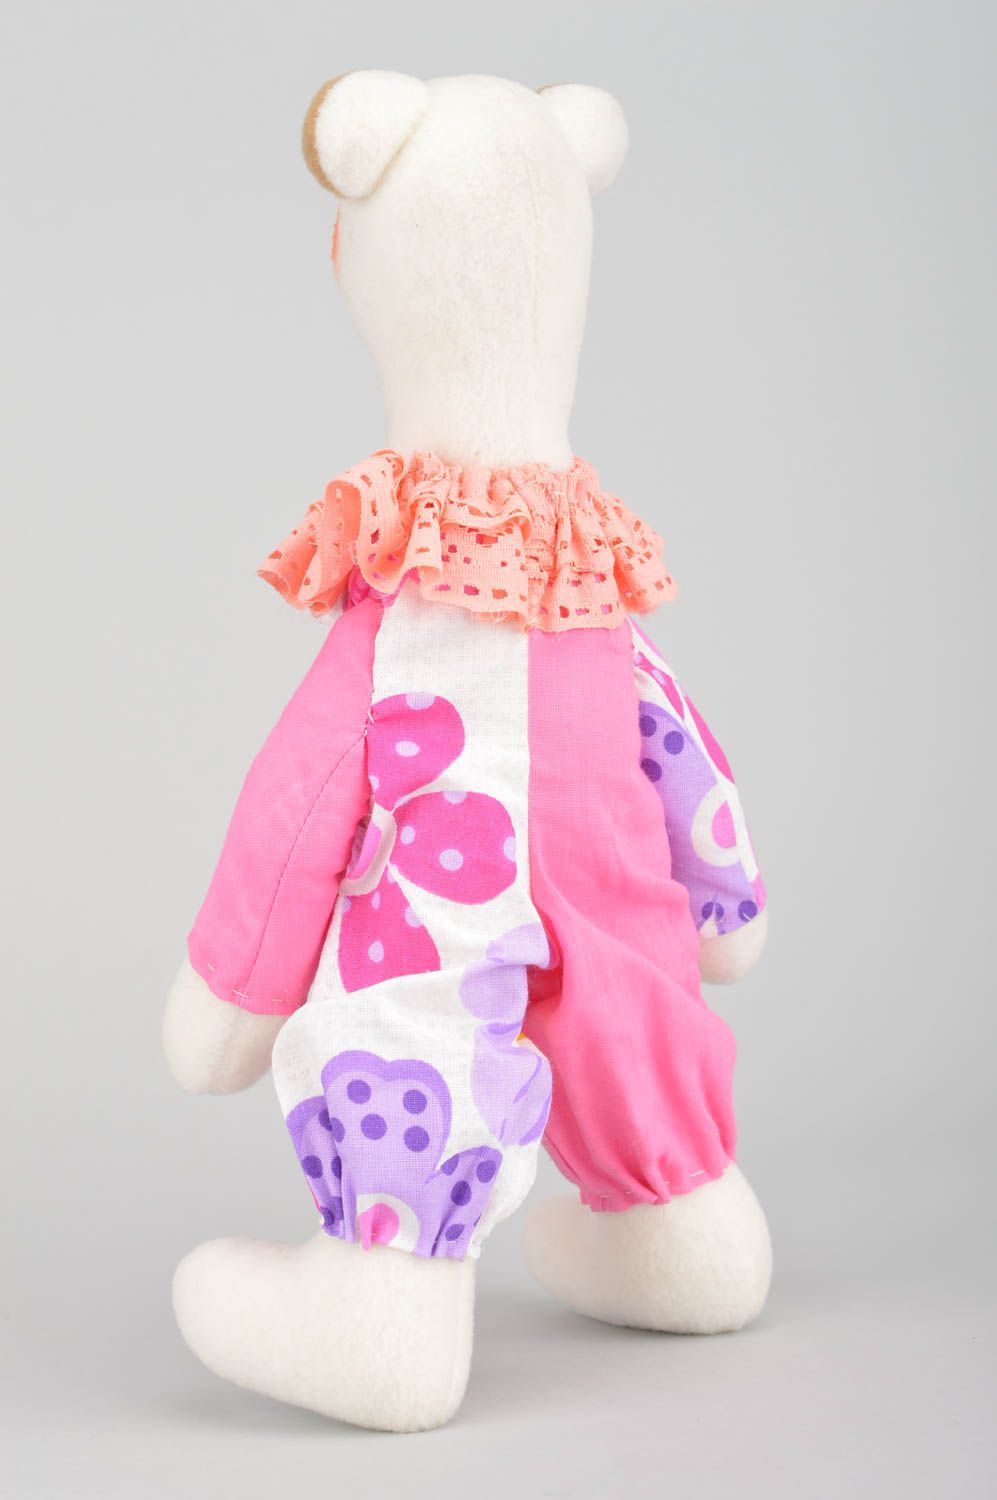 Kuscheltier Bär handmade rosa weiches Kuscheltier Geschenk für Kind künstlerisch foto 1